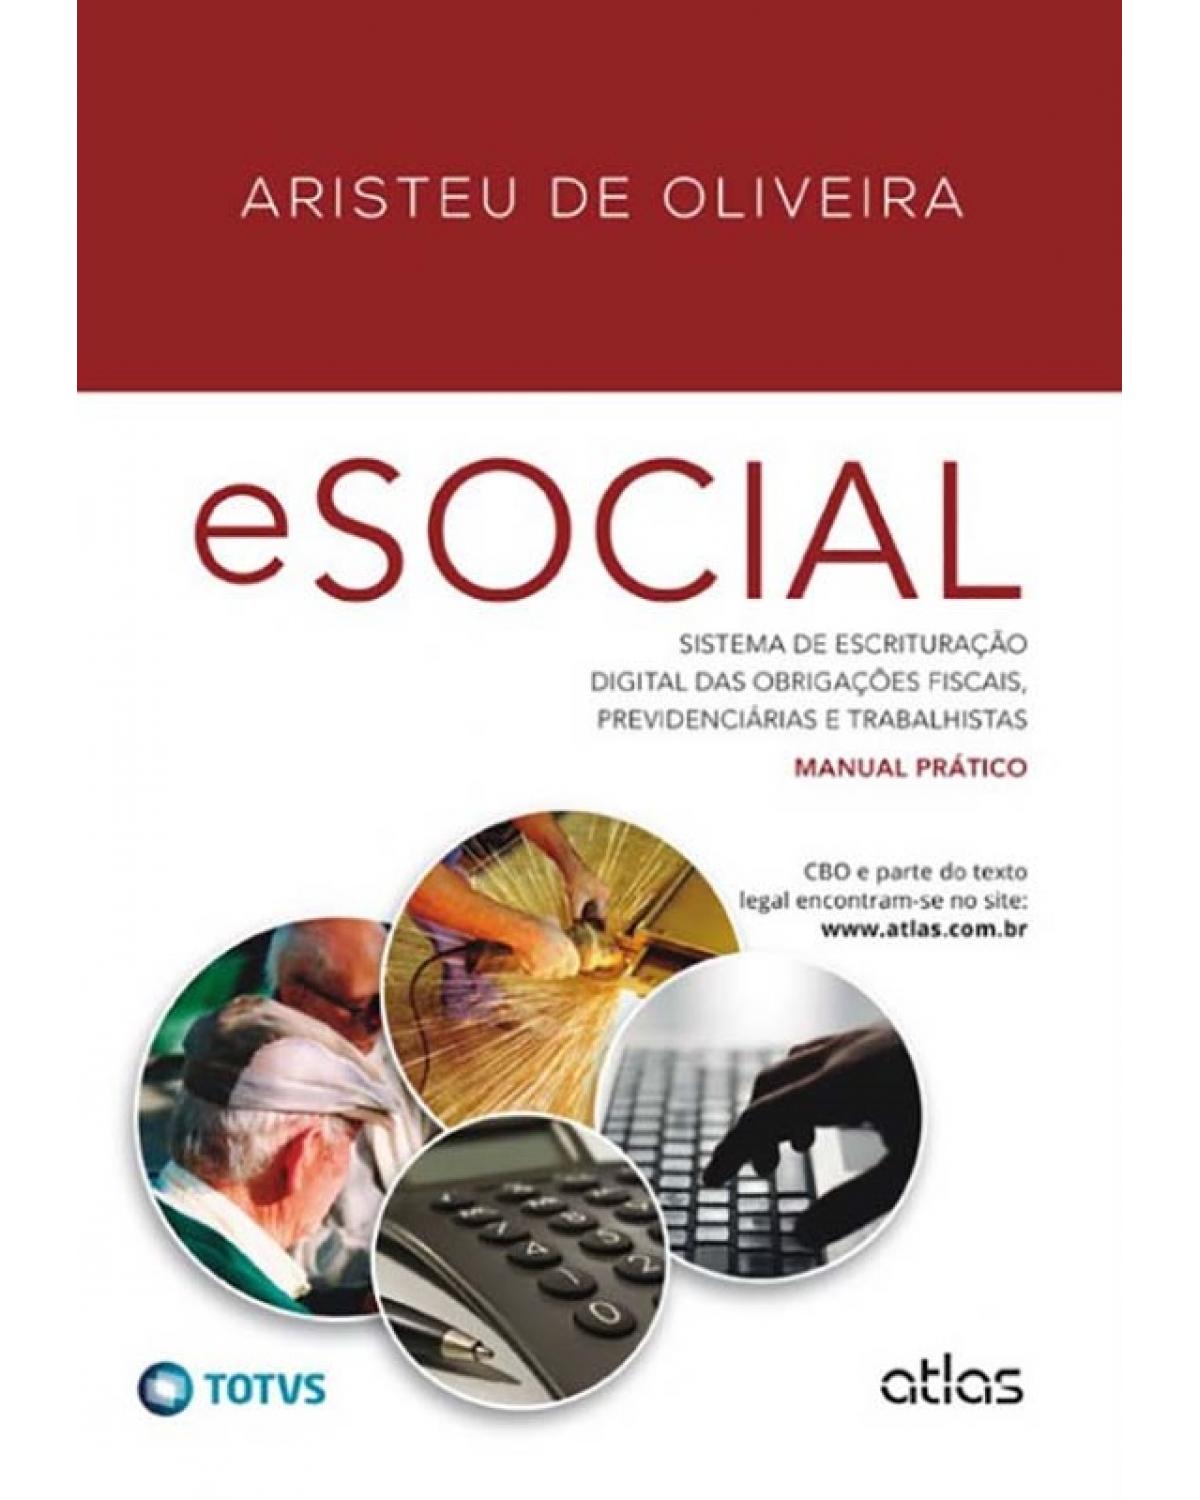 eSocial - Sistema de escrituração digital das obrigações fiscais, previdenciárias e trabalhistas - Manual prático - 1ª Edição | 2014